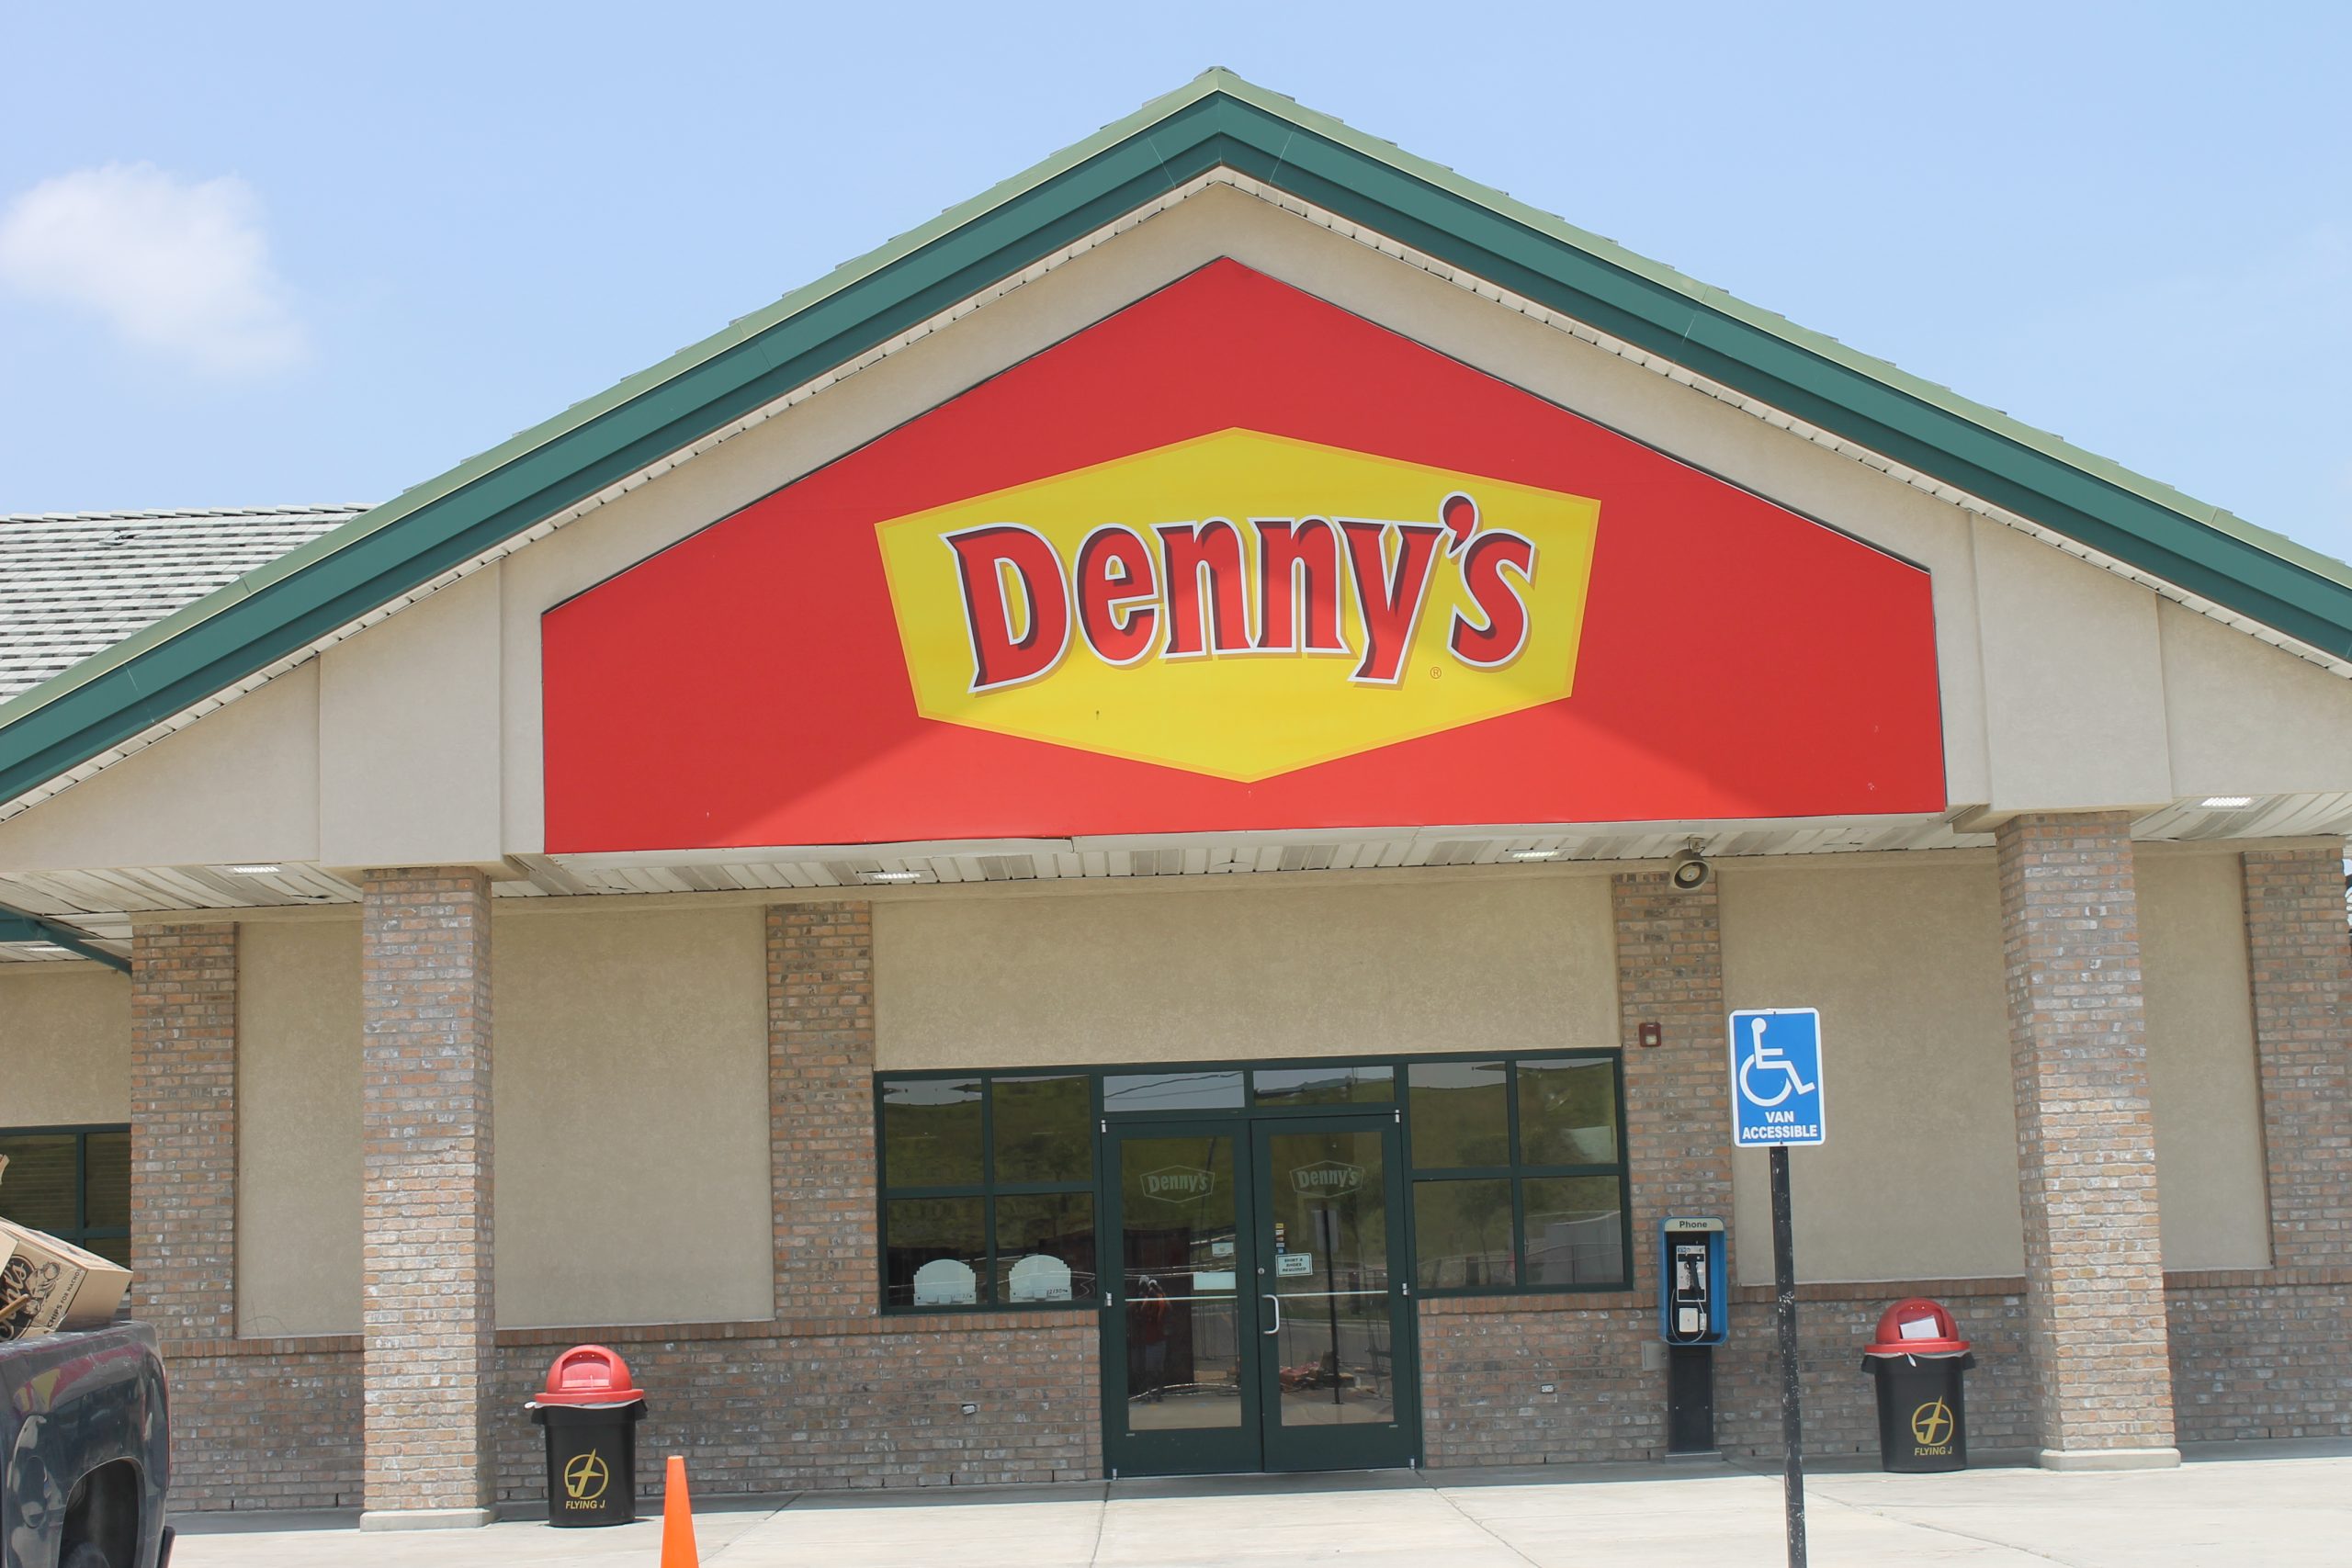 Denny’s #9550, E Prosperity Ave EBT Restaurant